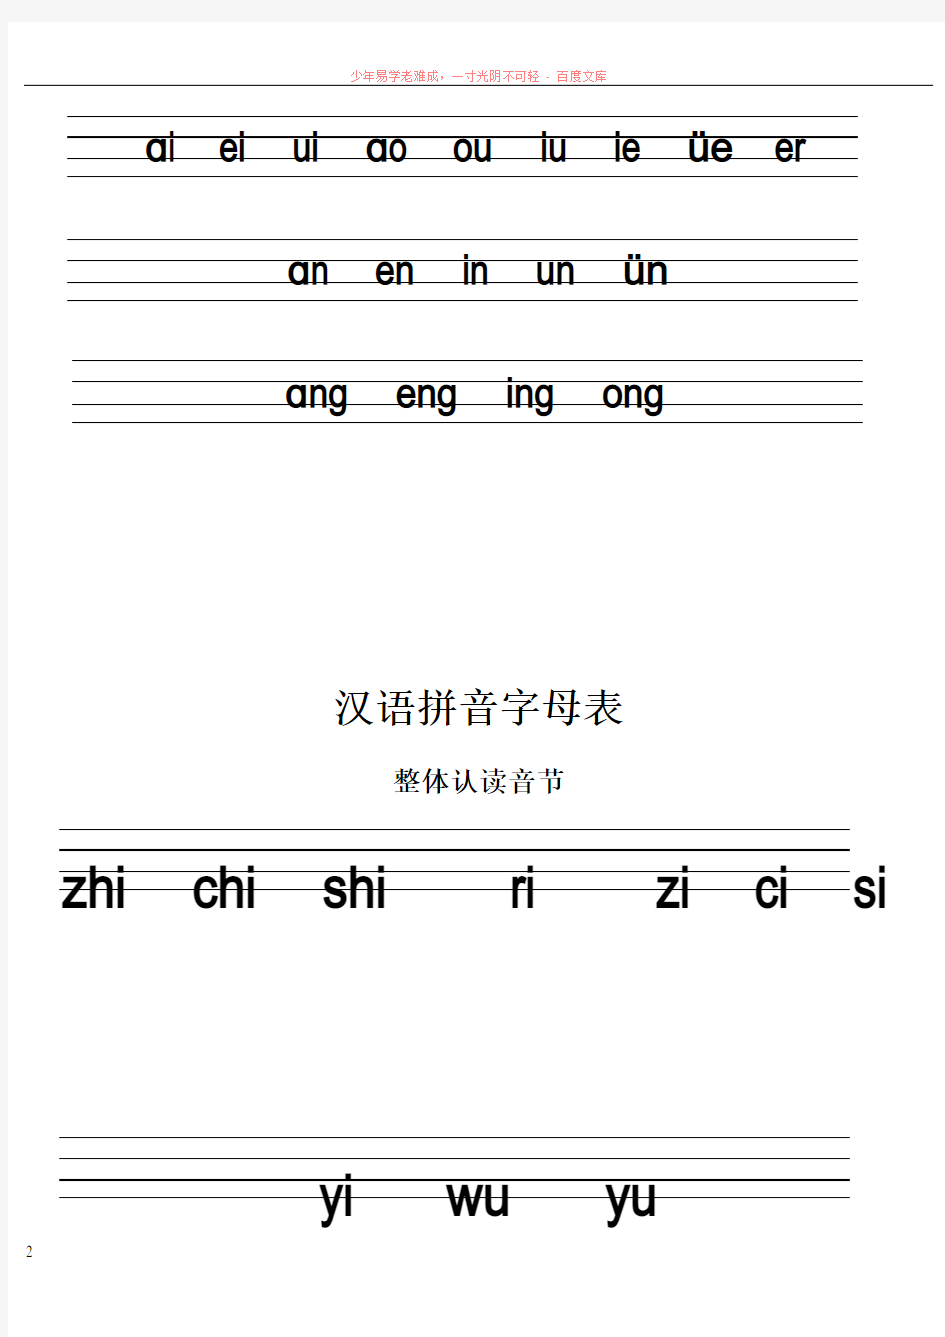 汉语拼音字母表及标准写法